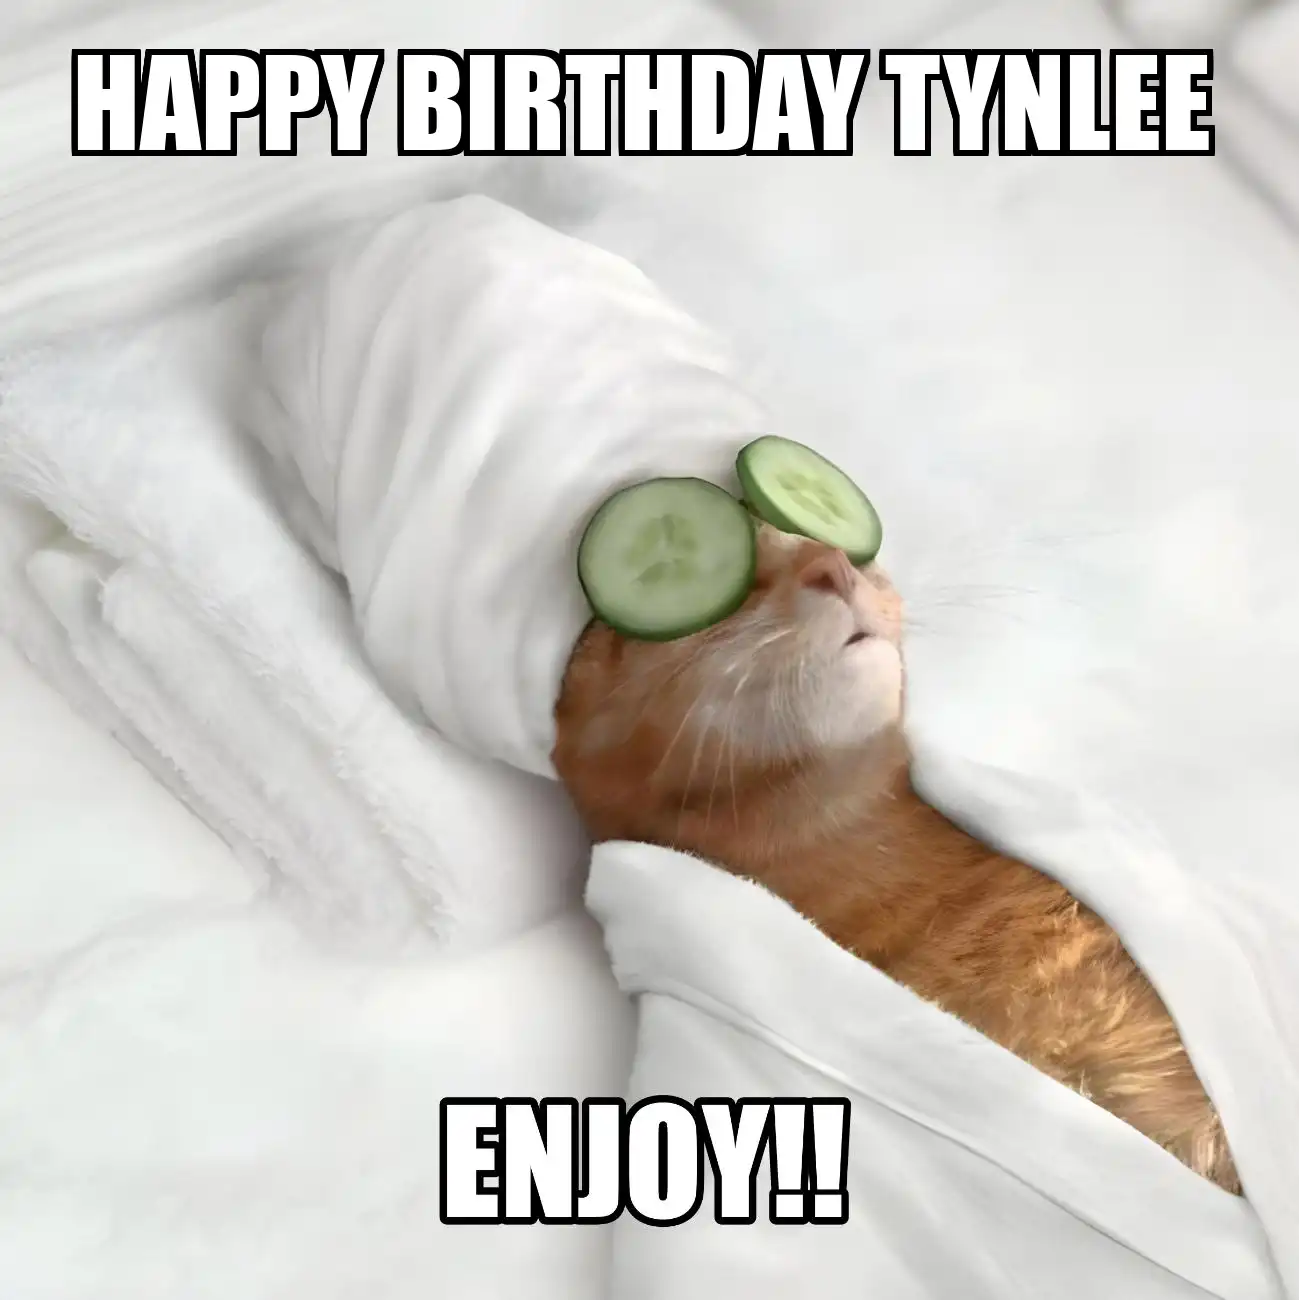 Happy Birthday Tynlee Enjoy Cat Meme